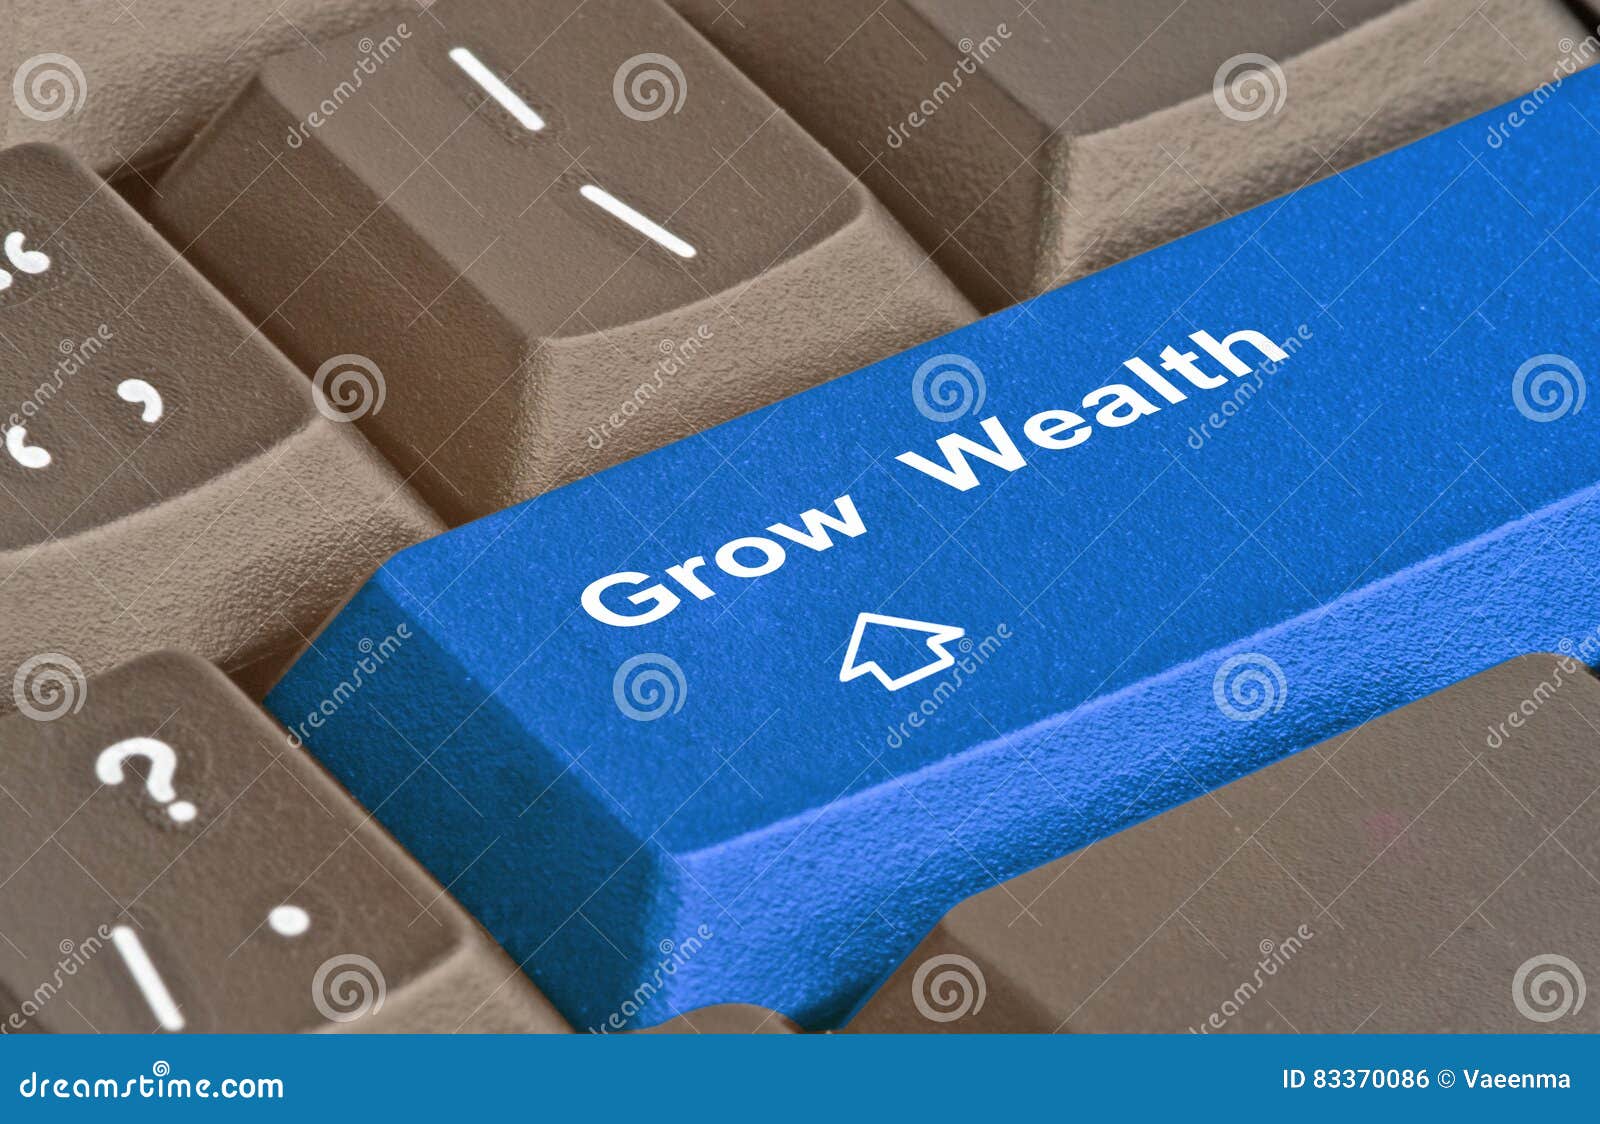 key to grow wealth